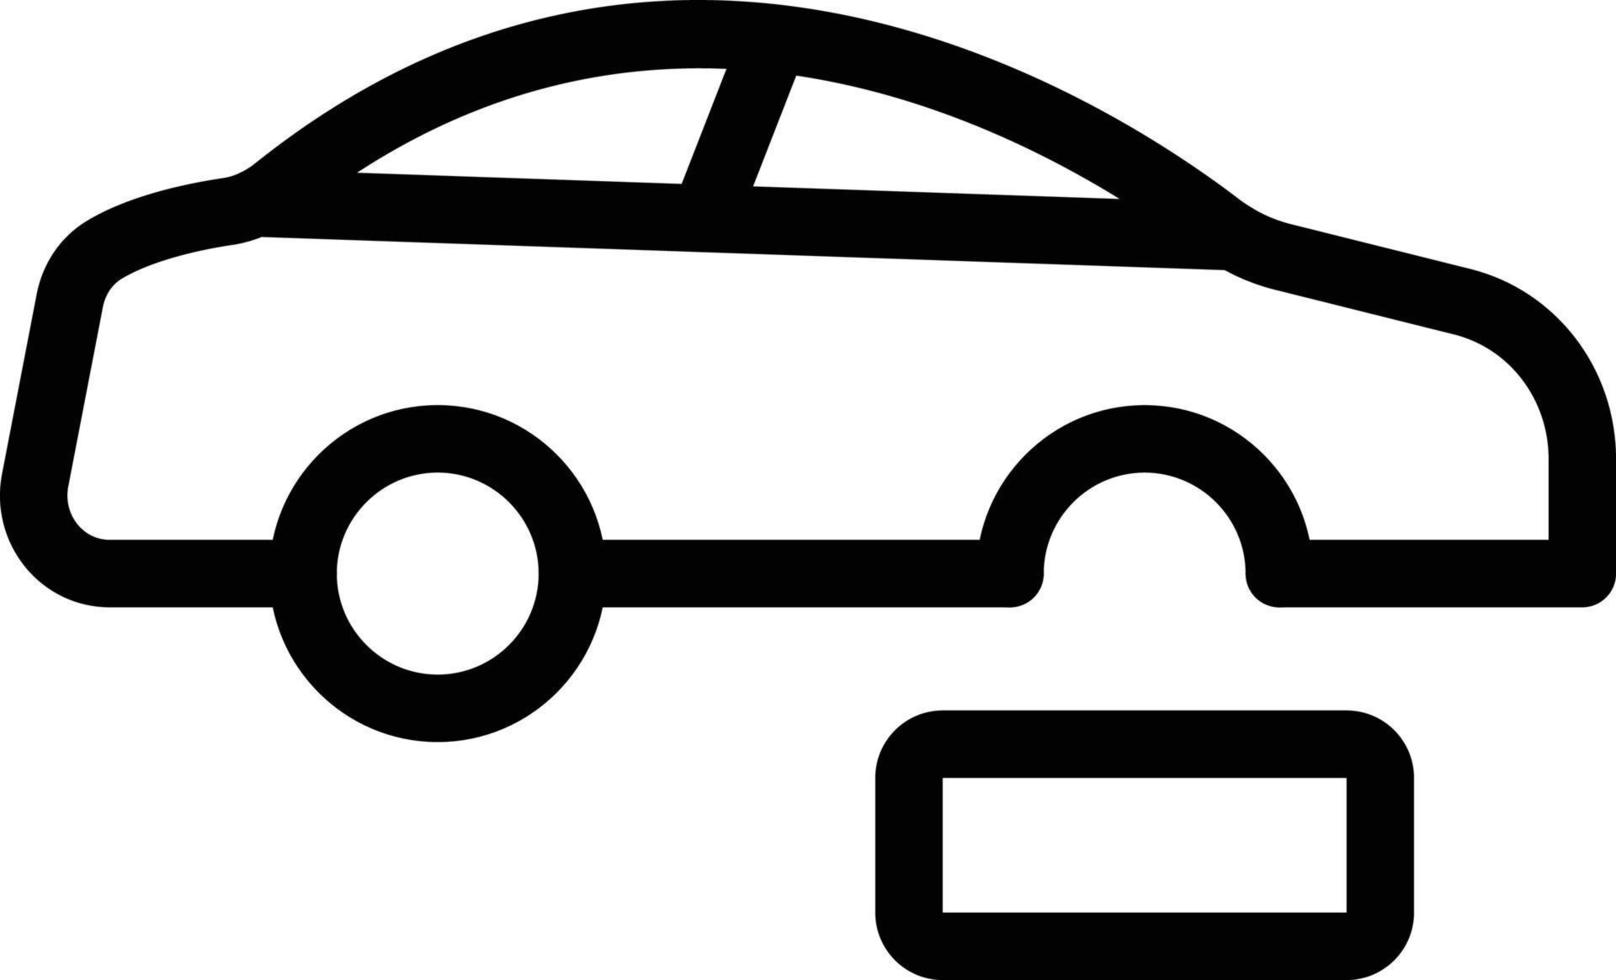 bil däck vektor illustration på en bakgrund.premium kvalitet symbols.vector ikoner för begrepp och grafisk design.